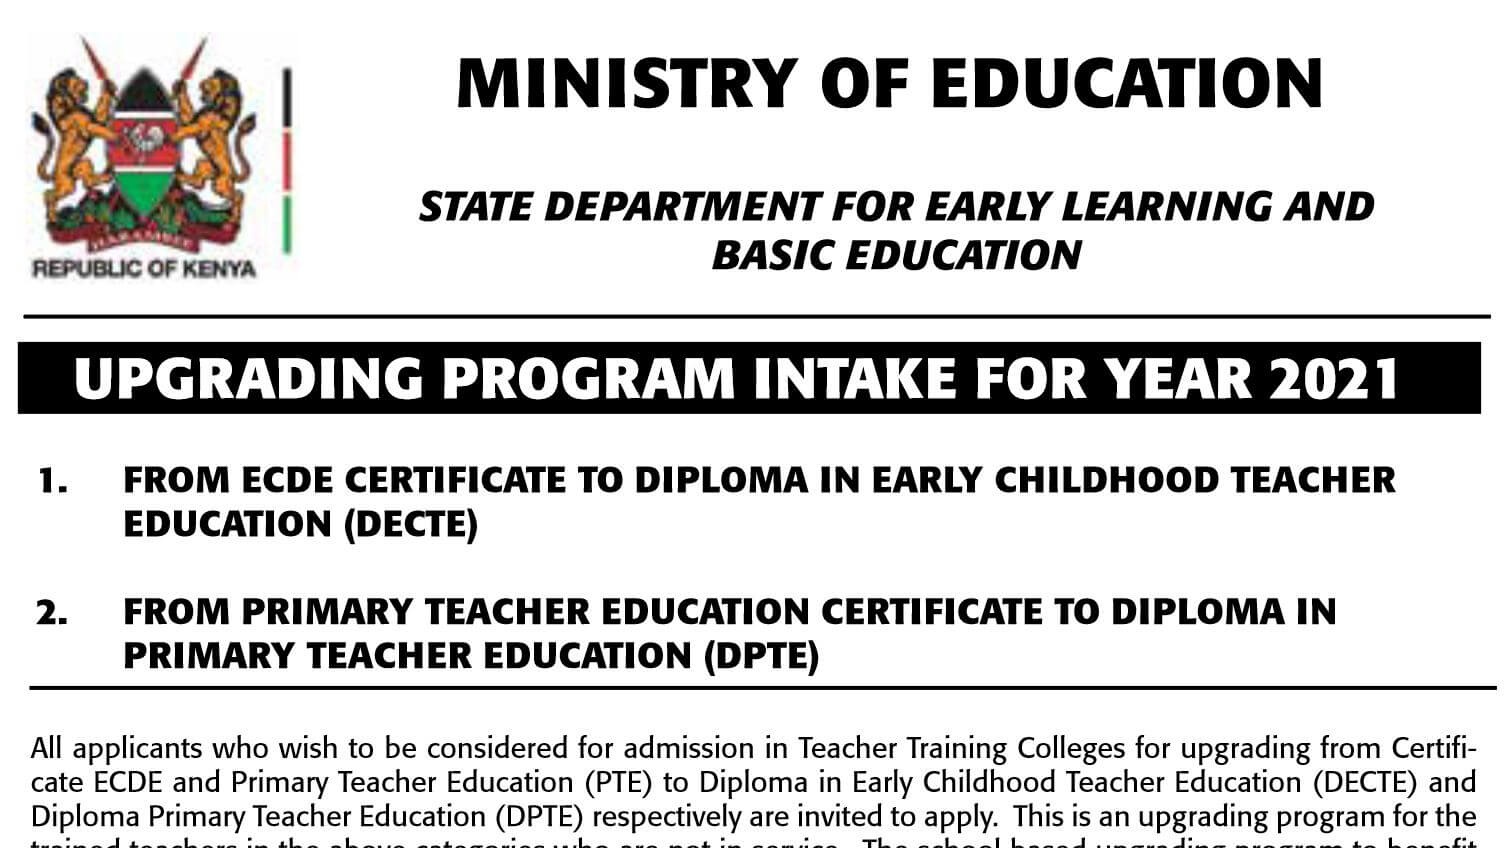 Ministry of education upgrading program for kenyan teachers